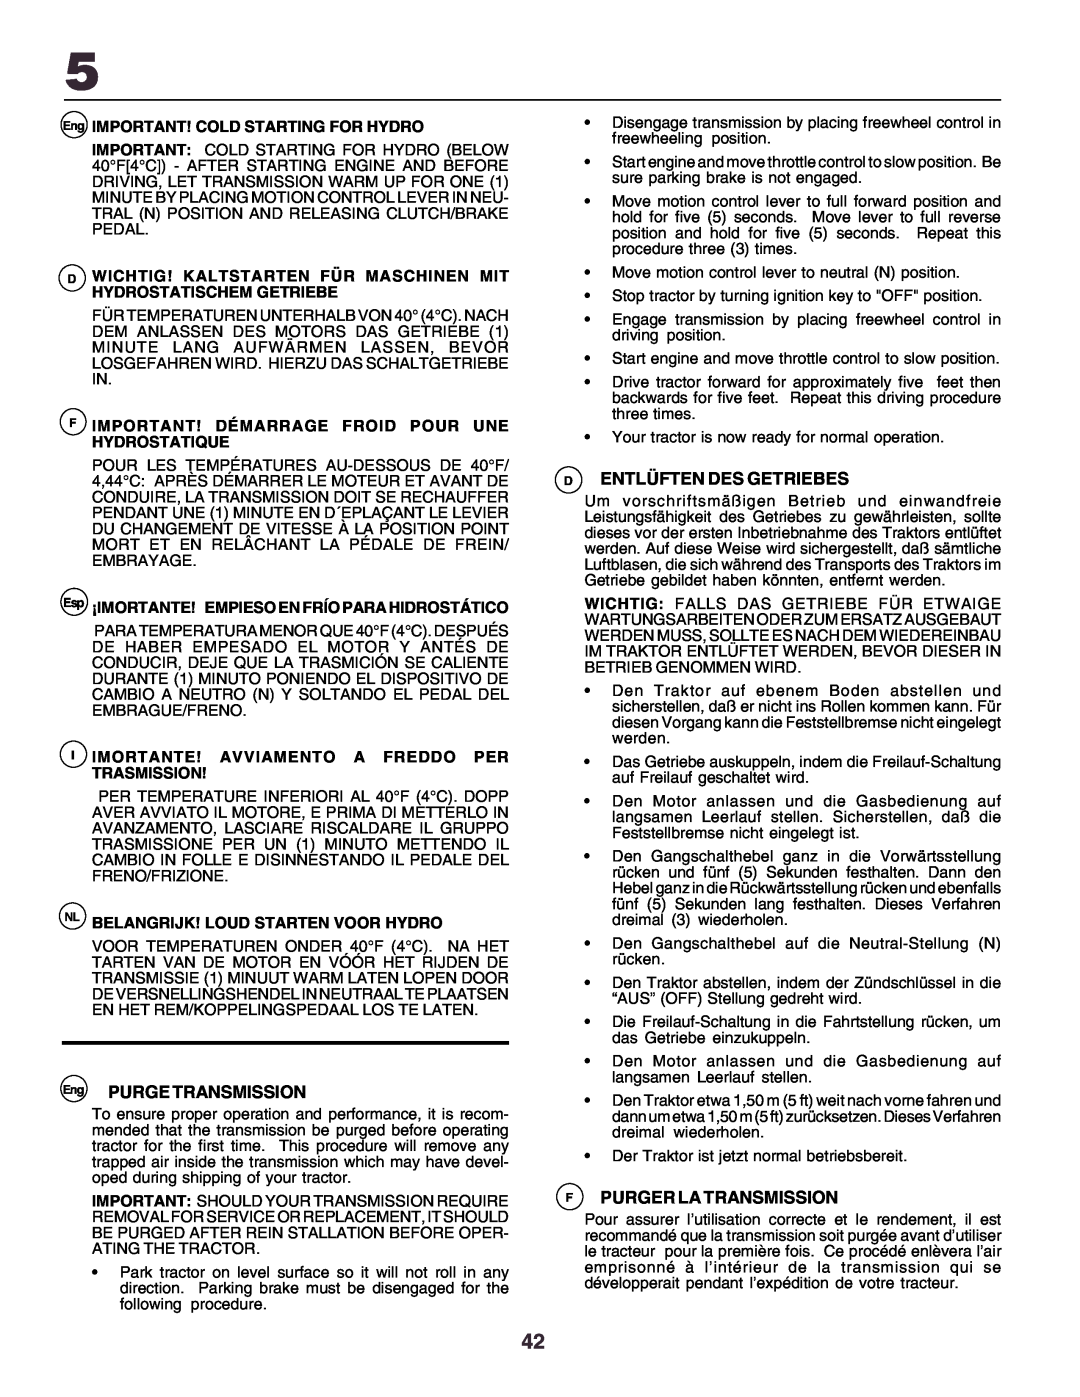 Husqvarna YTH170 instruction manual Eng PURGE TRANSMISSION, Dentlüften Des Getriebes, Fpurger La Transmission 